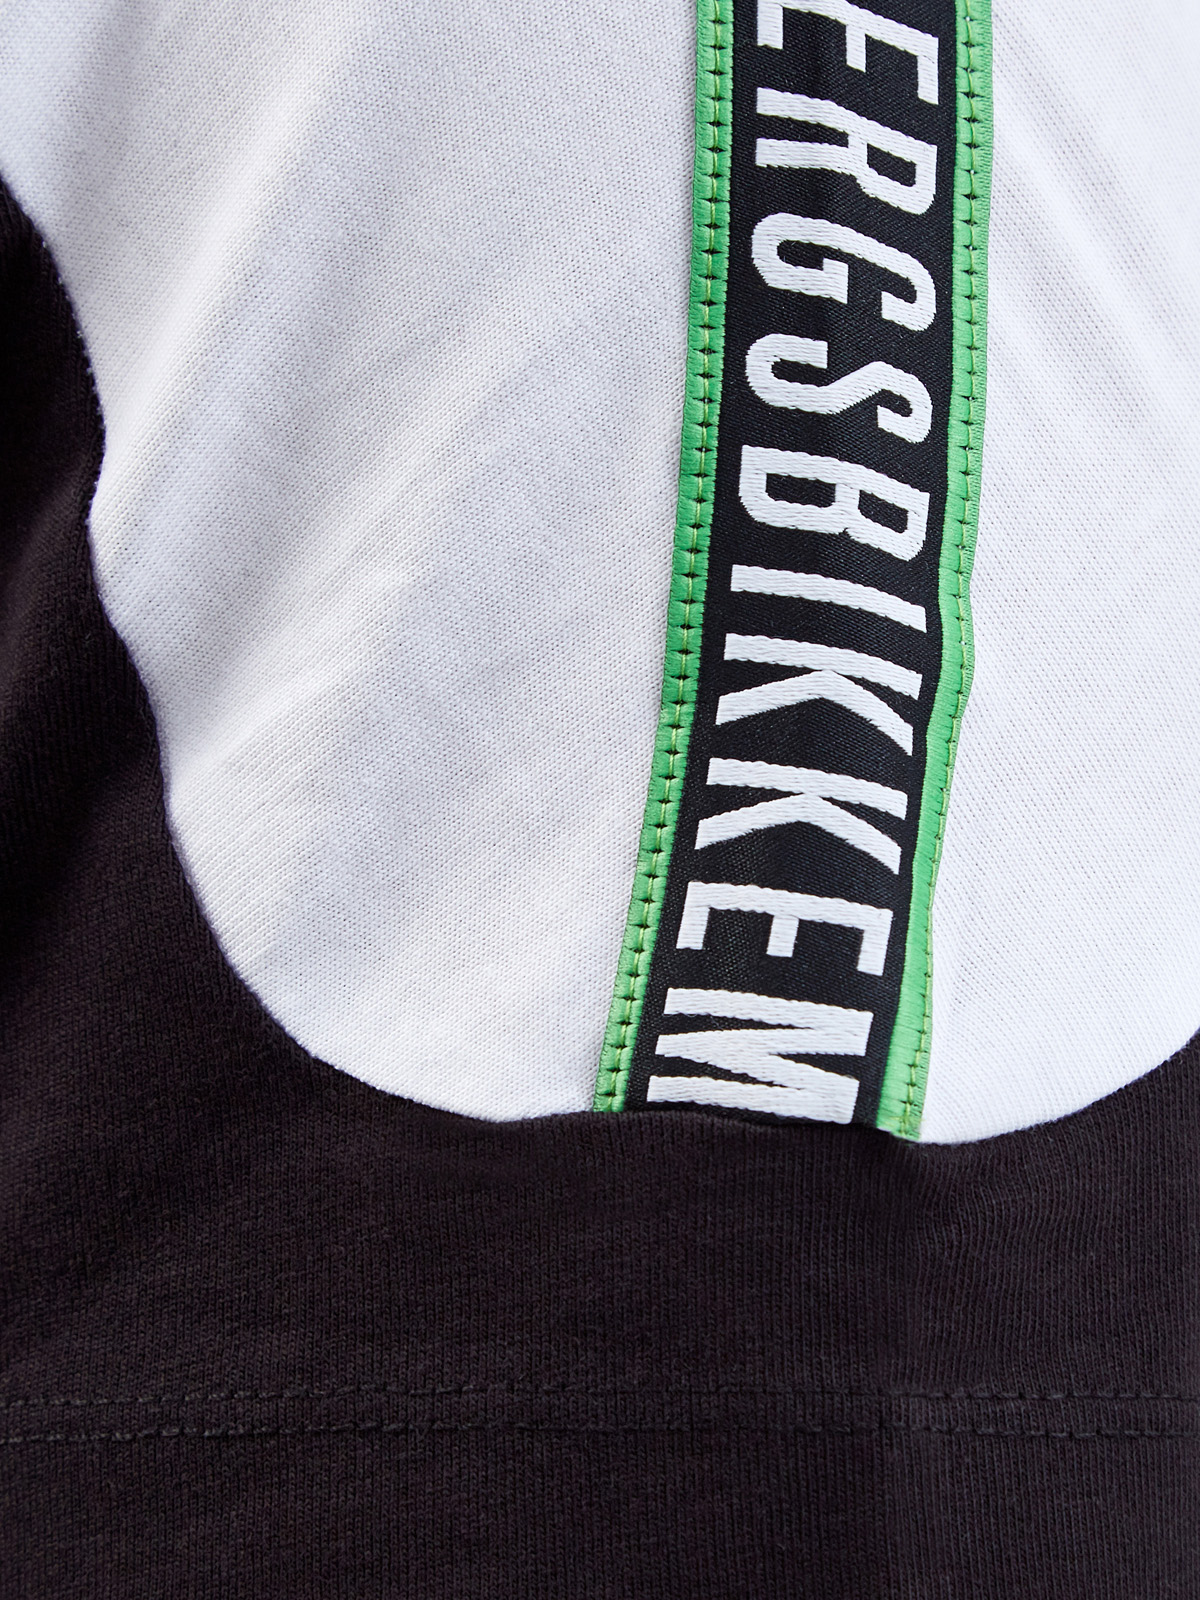 Хлопковая футболка в стиле colorblock с лентой-аппликацией BIKKEMBERGS, цвет черно-белый, размер S;M;L;XL;2XL;3XL - фото 5